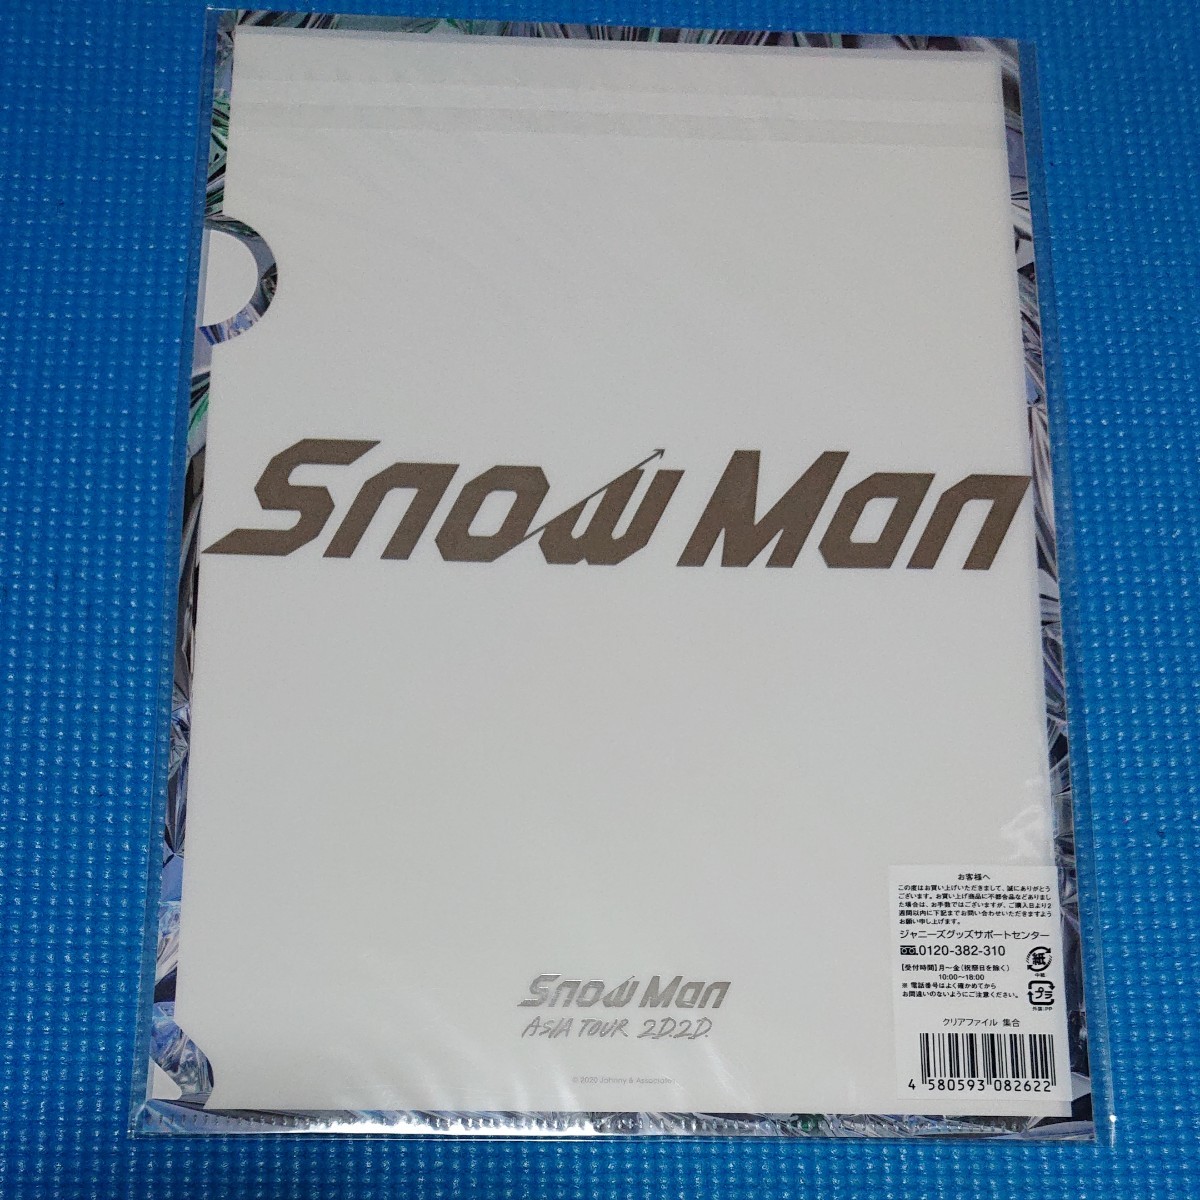 【新品未開封】Snow Man クリアファイル集合 2D.2D.